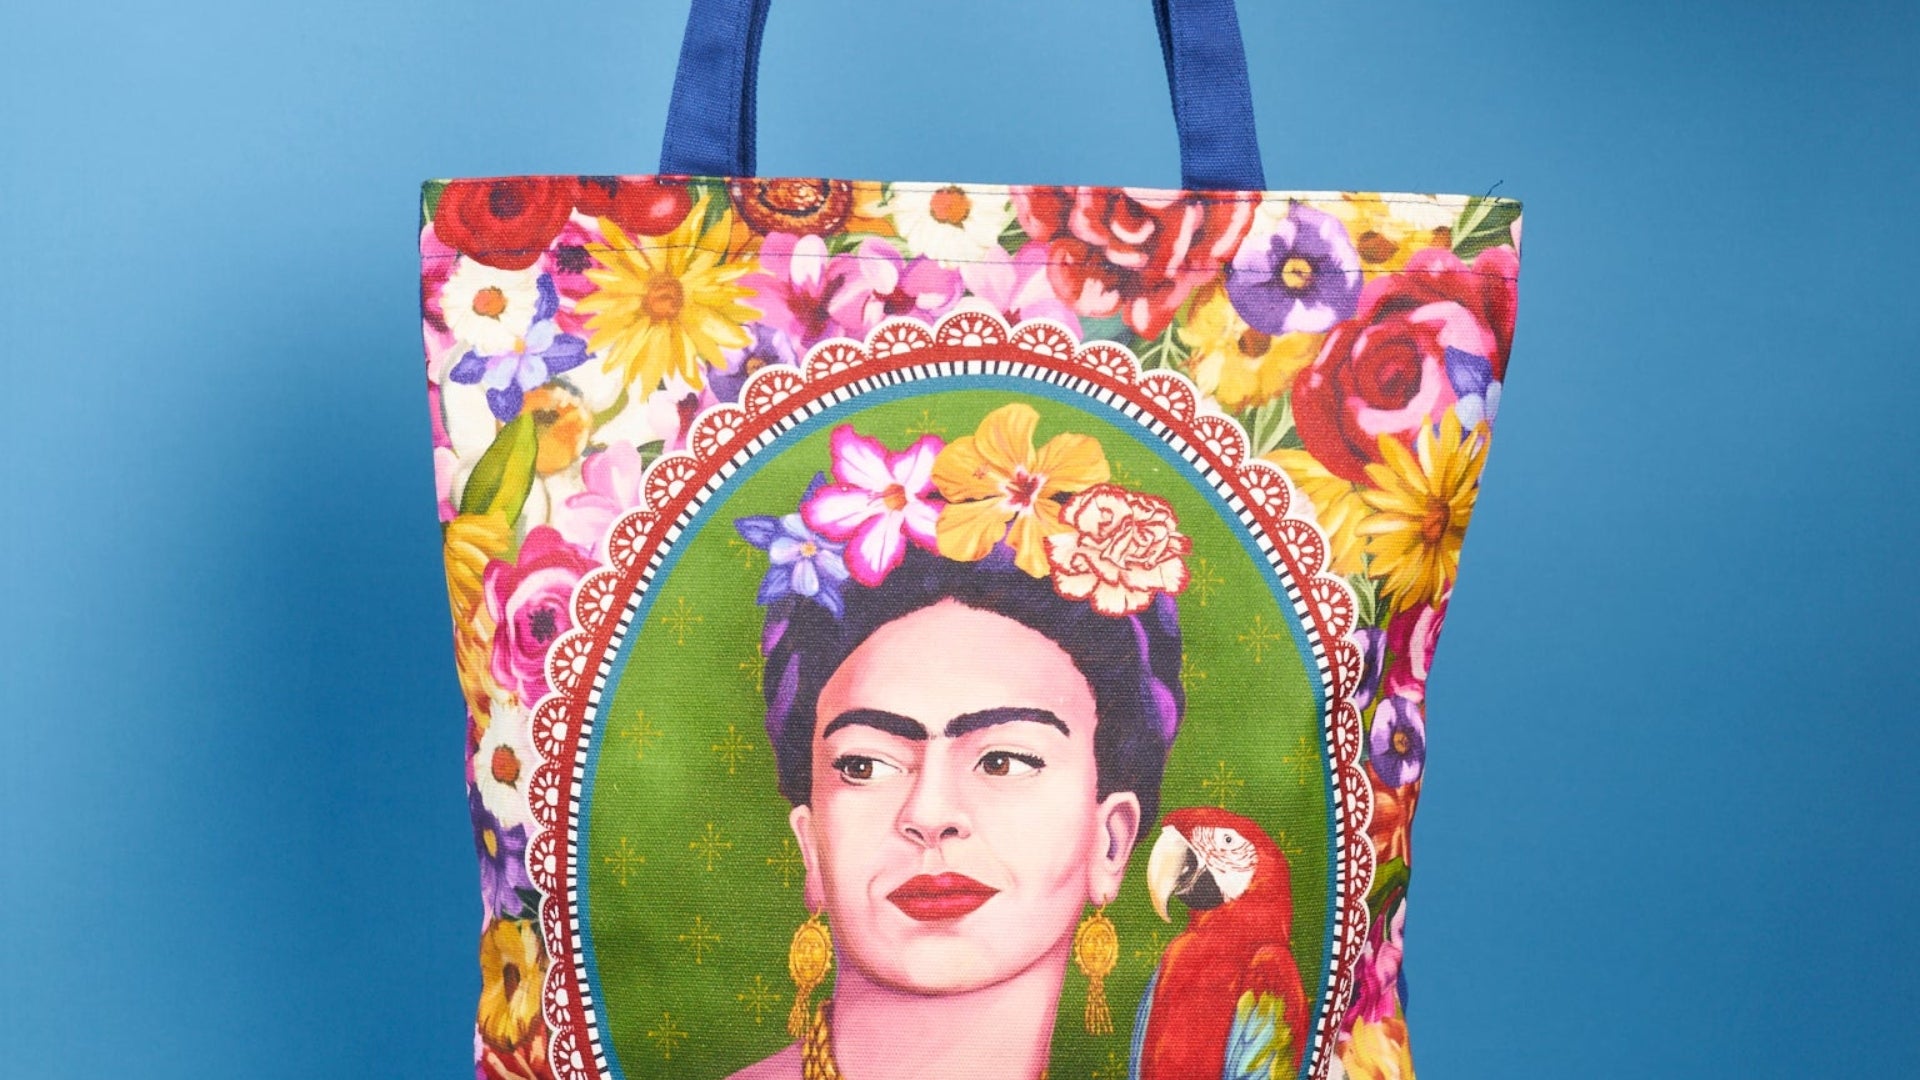 Frida Kahlo tote bag